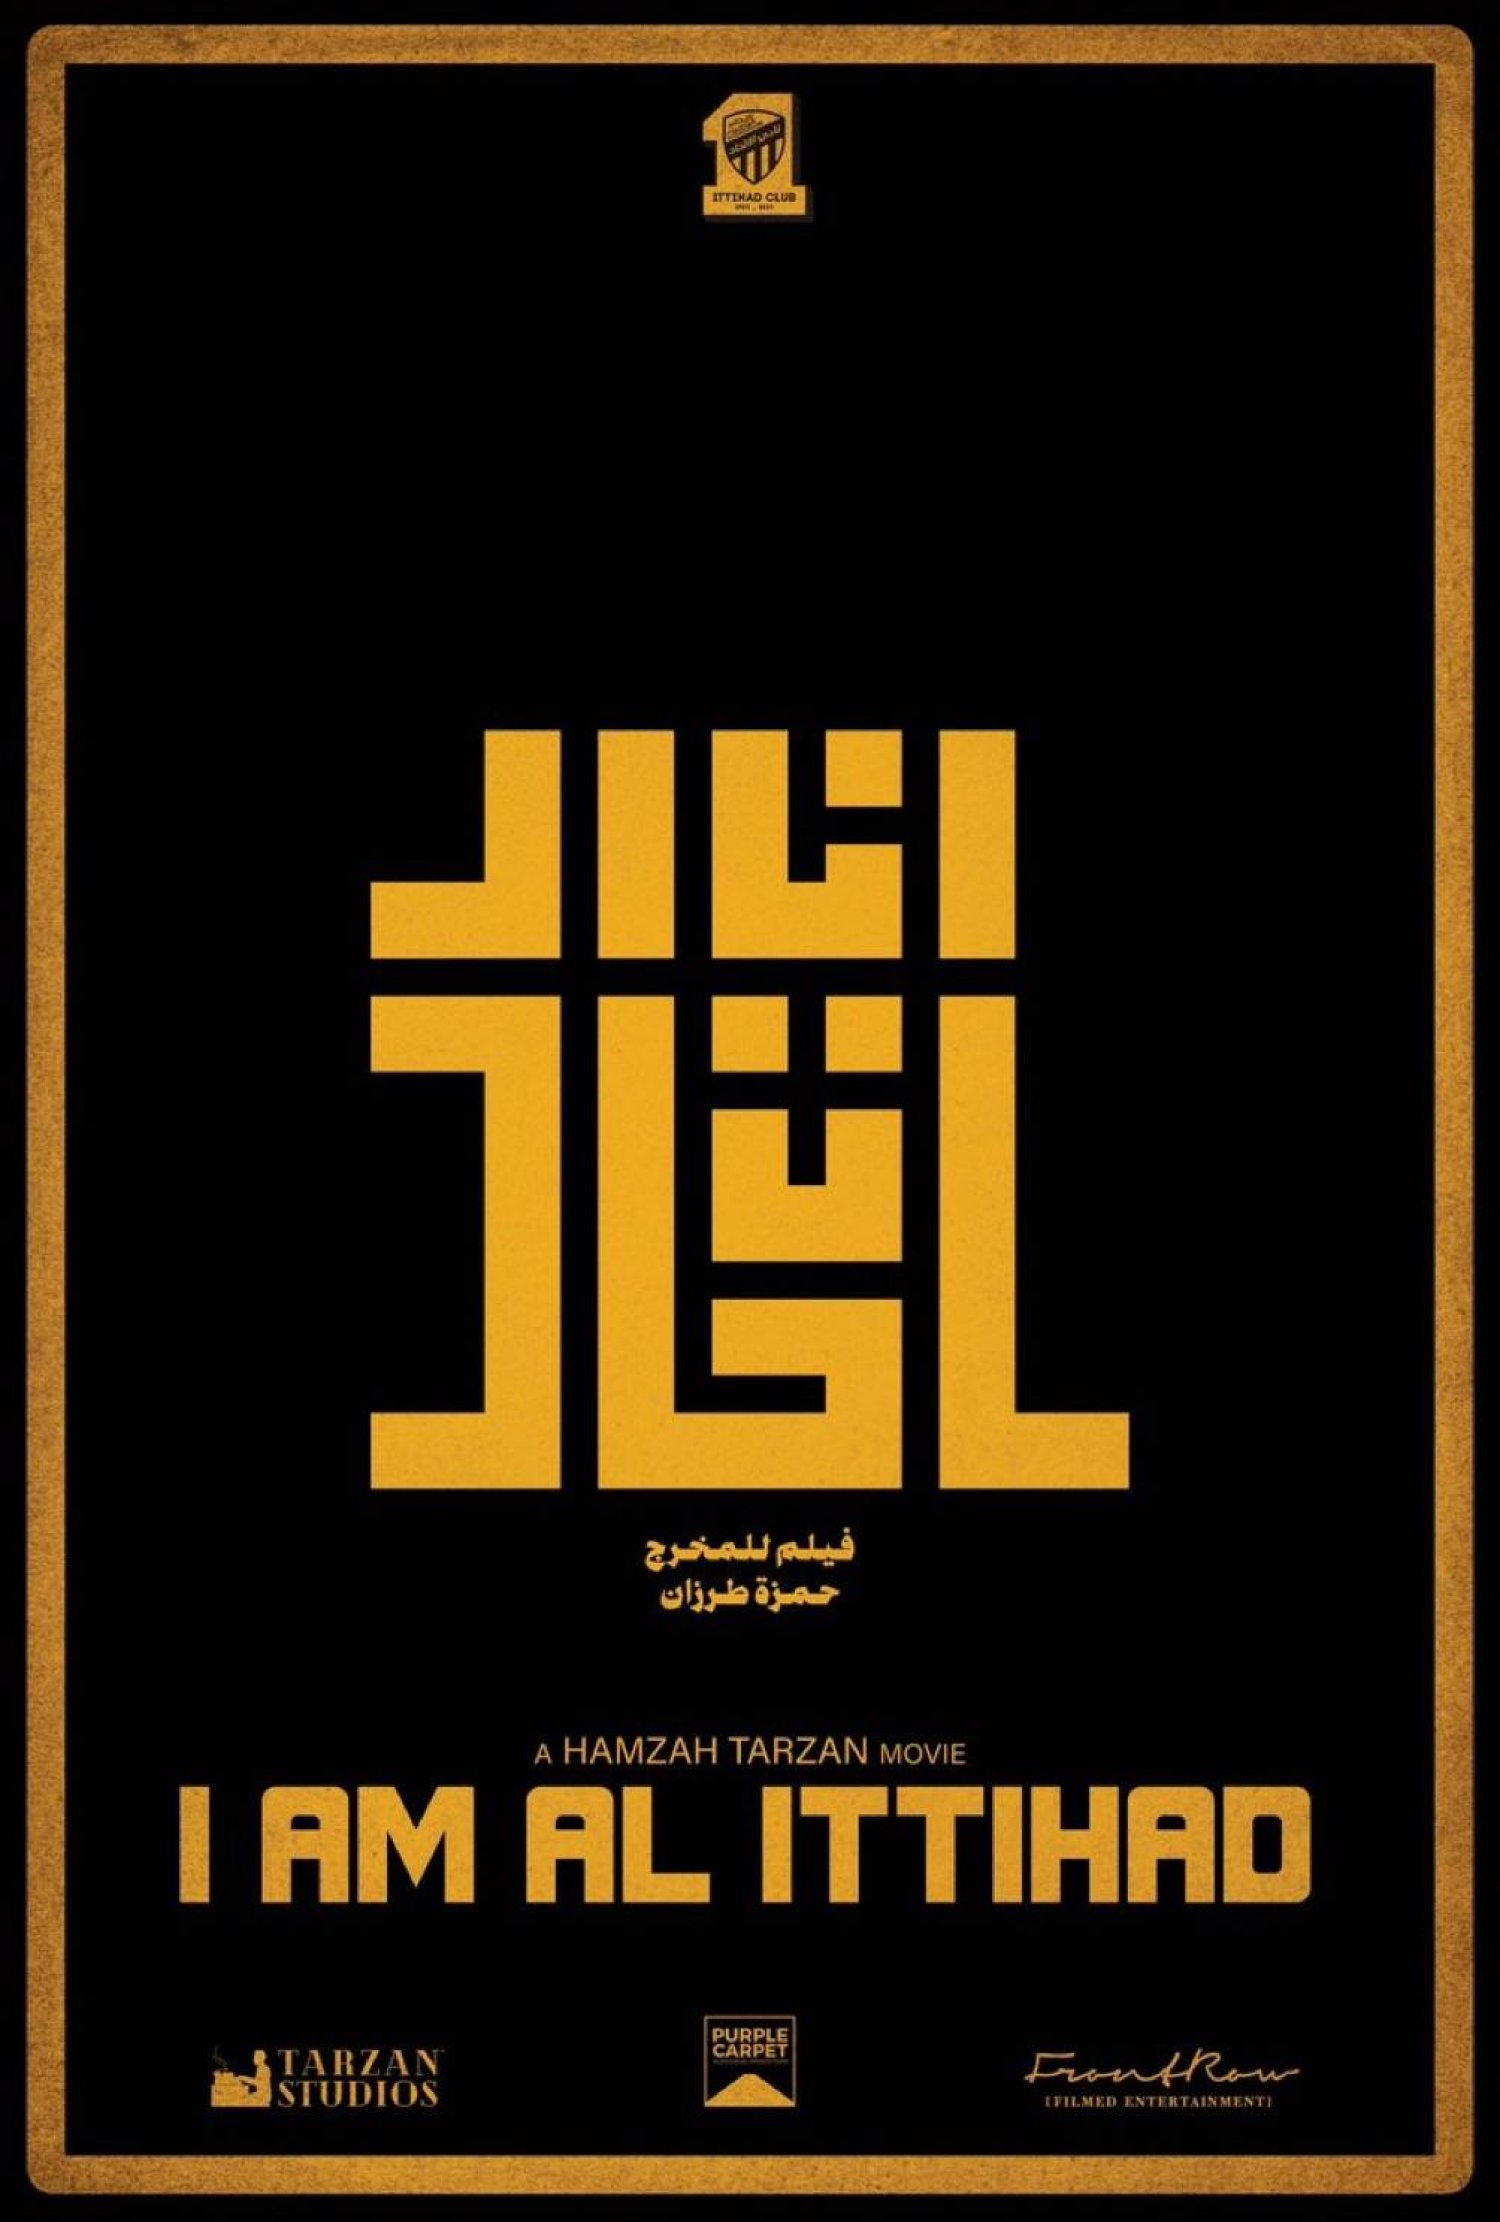 «بوستر» دعائي لفيلم «أنا الاتحاد» الذي يُعرض في صالات السعودية